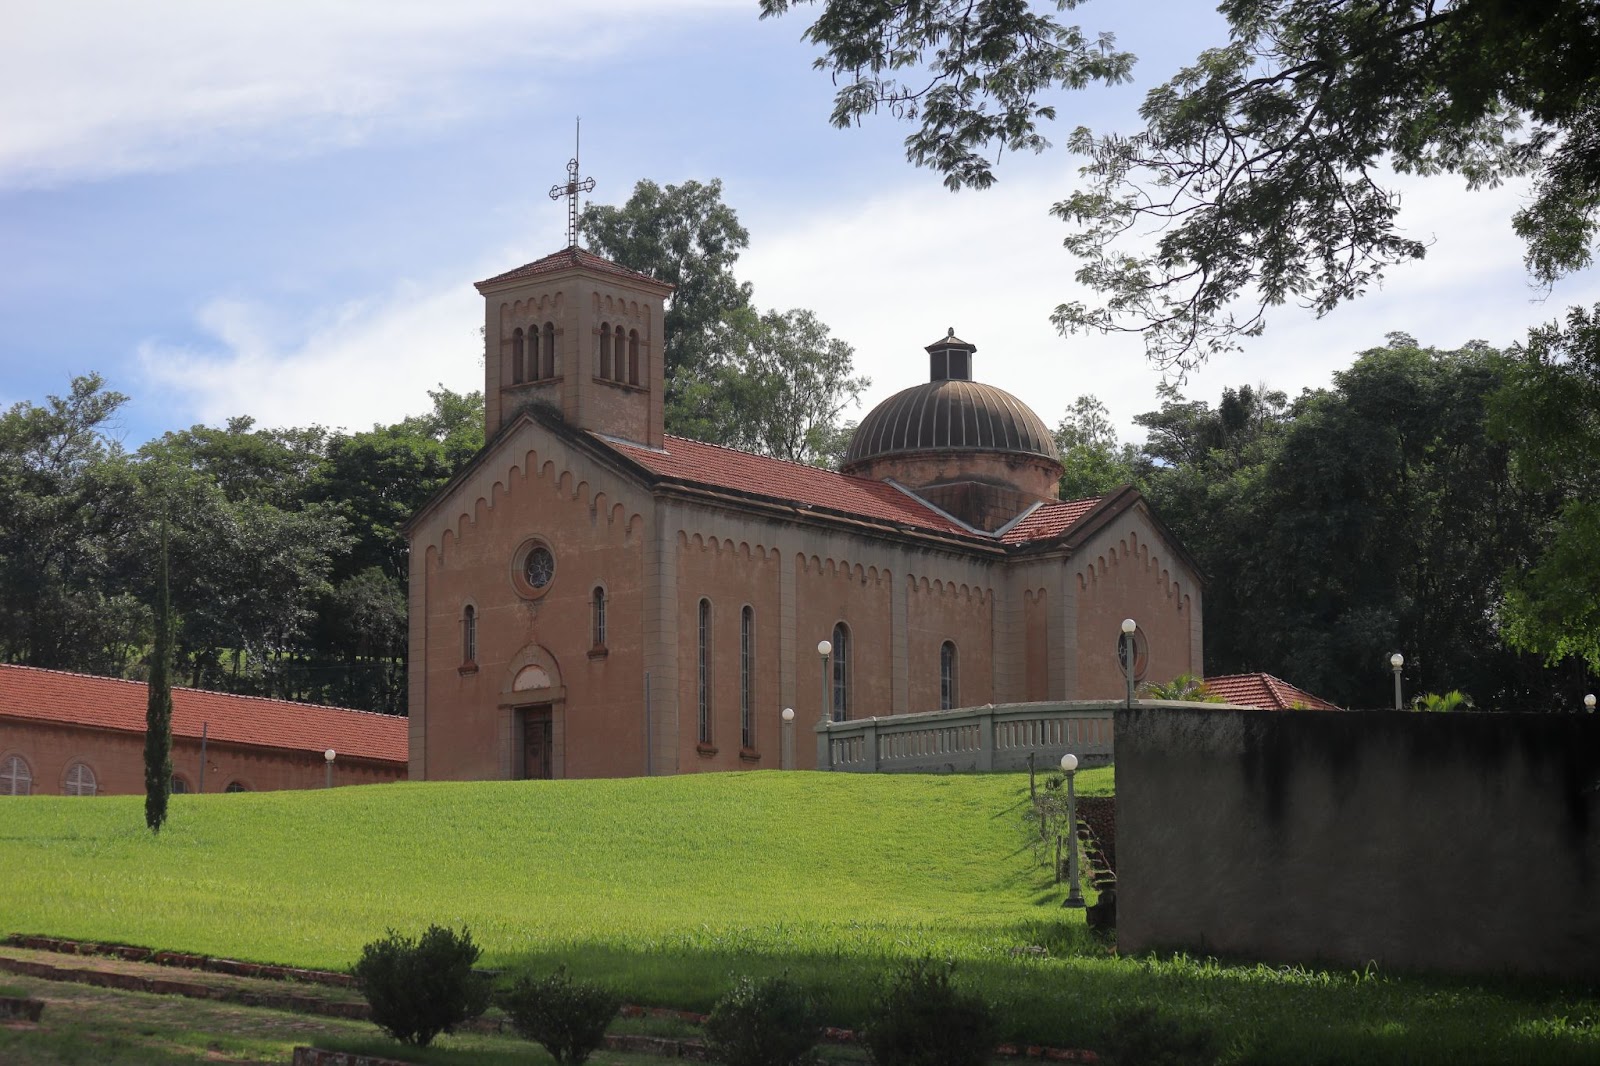 Capela Monte Alegre, templo de arquitetura inspirada nas antigas igrejas toscanas. A fachada de tijolos aparentes tem janelas estreitas, uma torre e uma cúpula arredondada